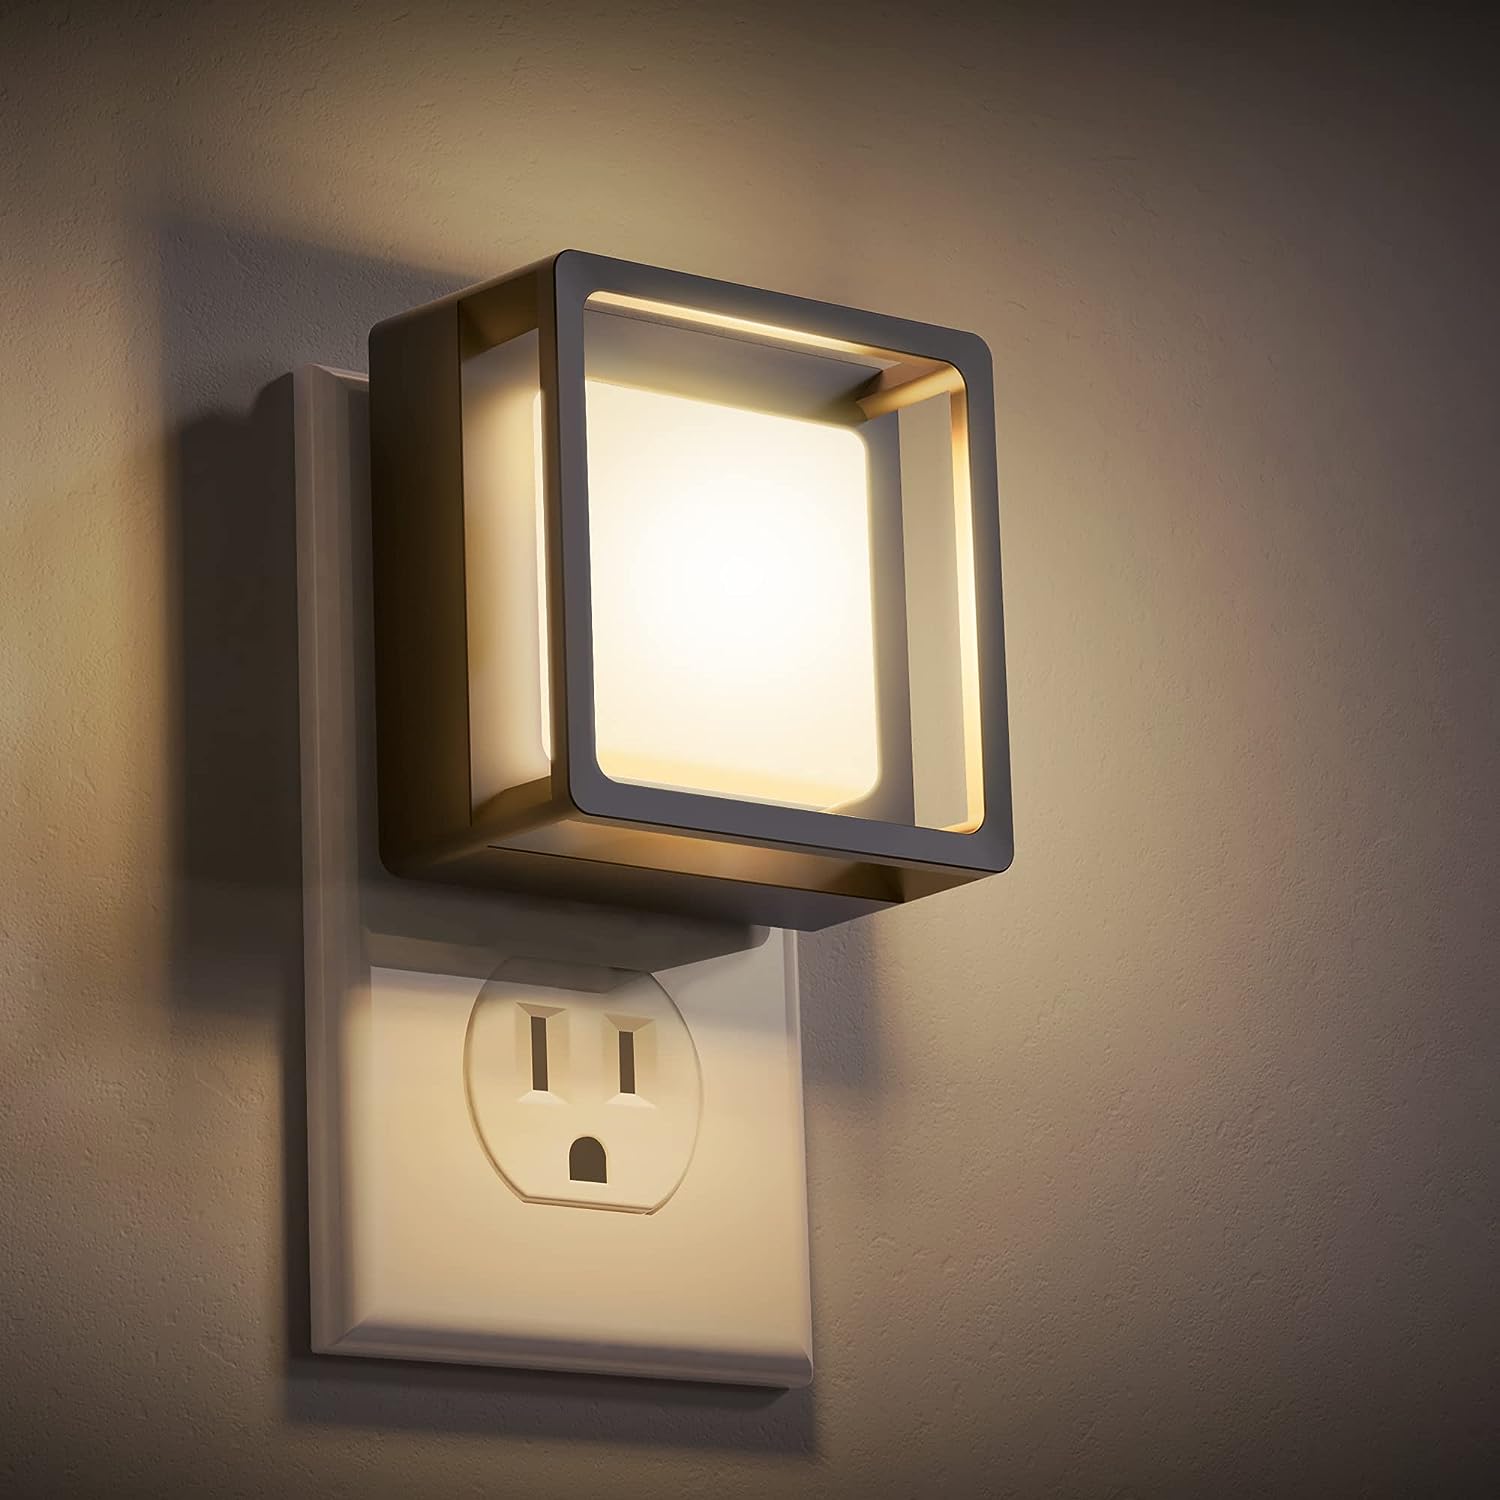 LED Night Light, DORESshop Night Lights Plug Into Wall [...]